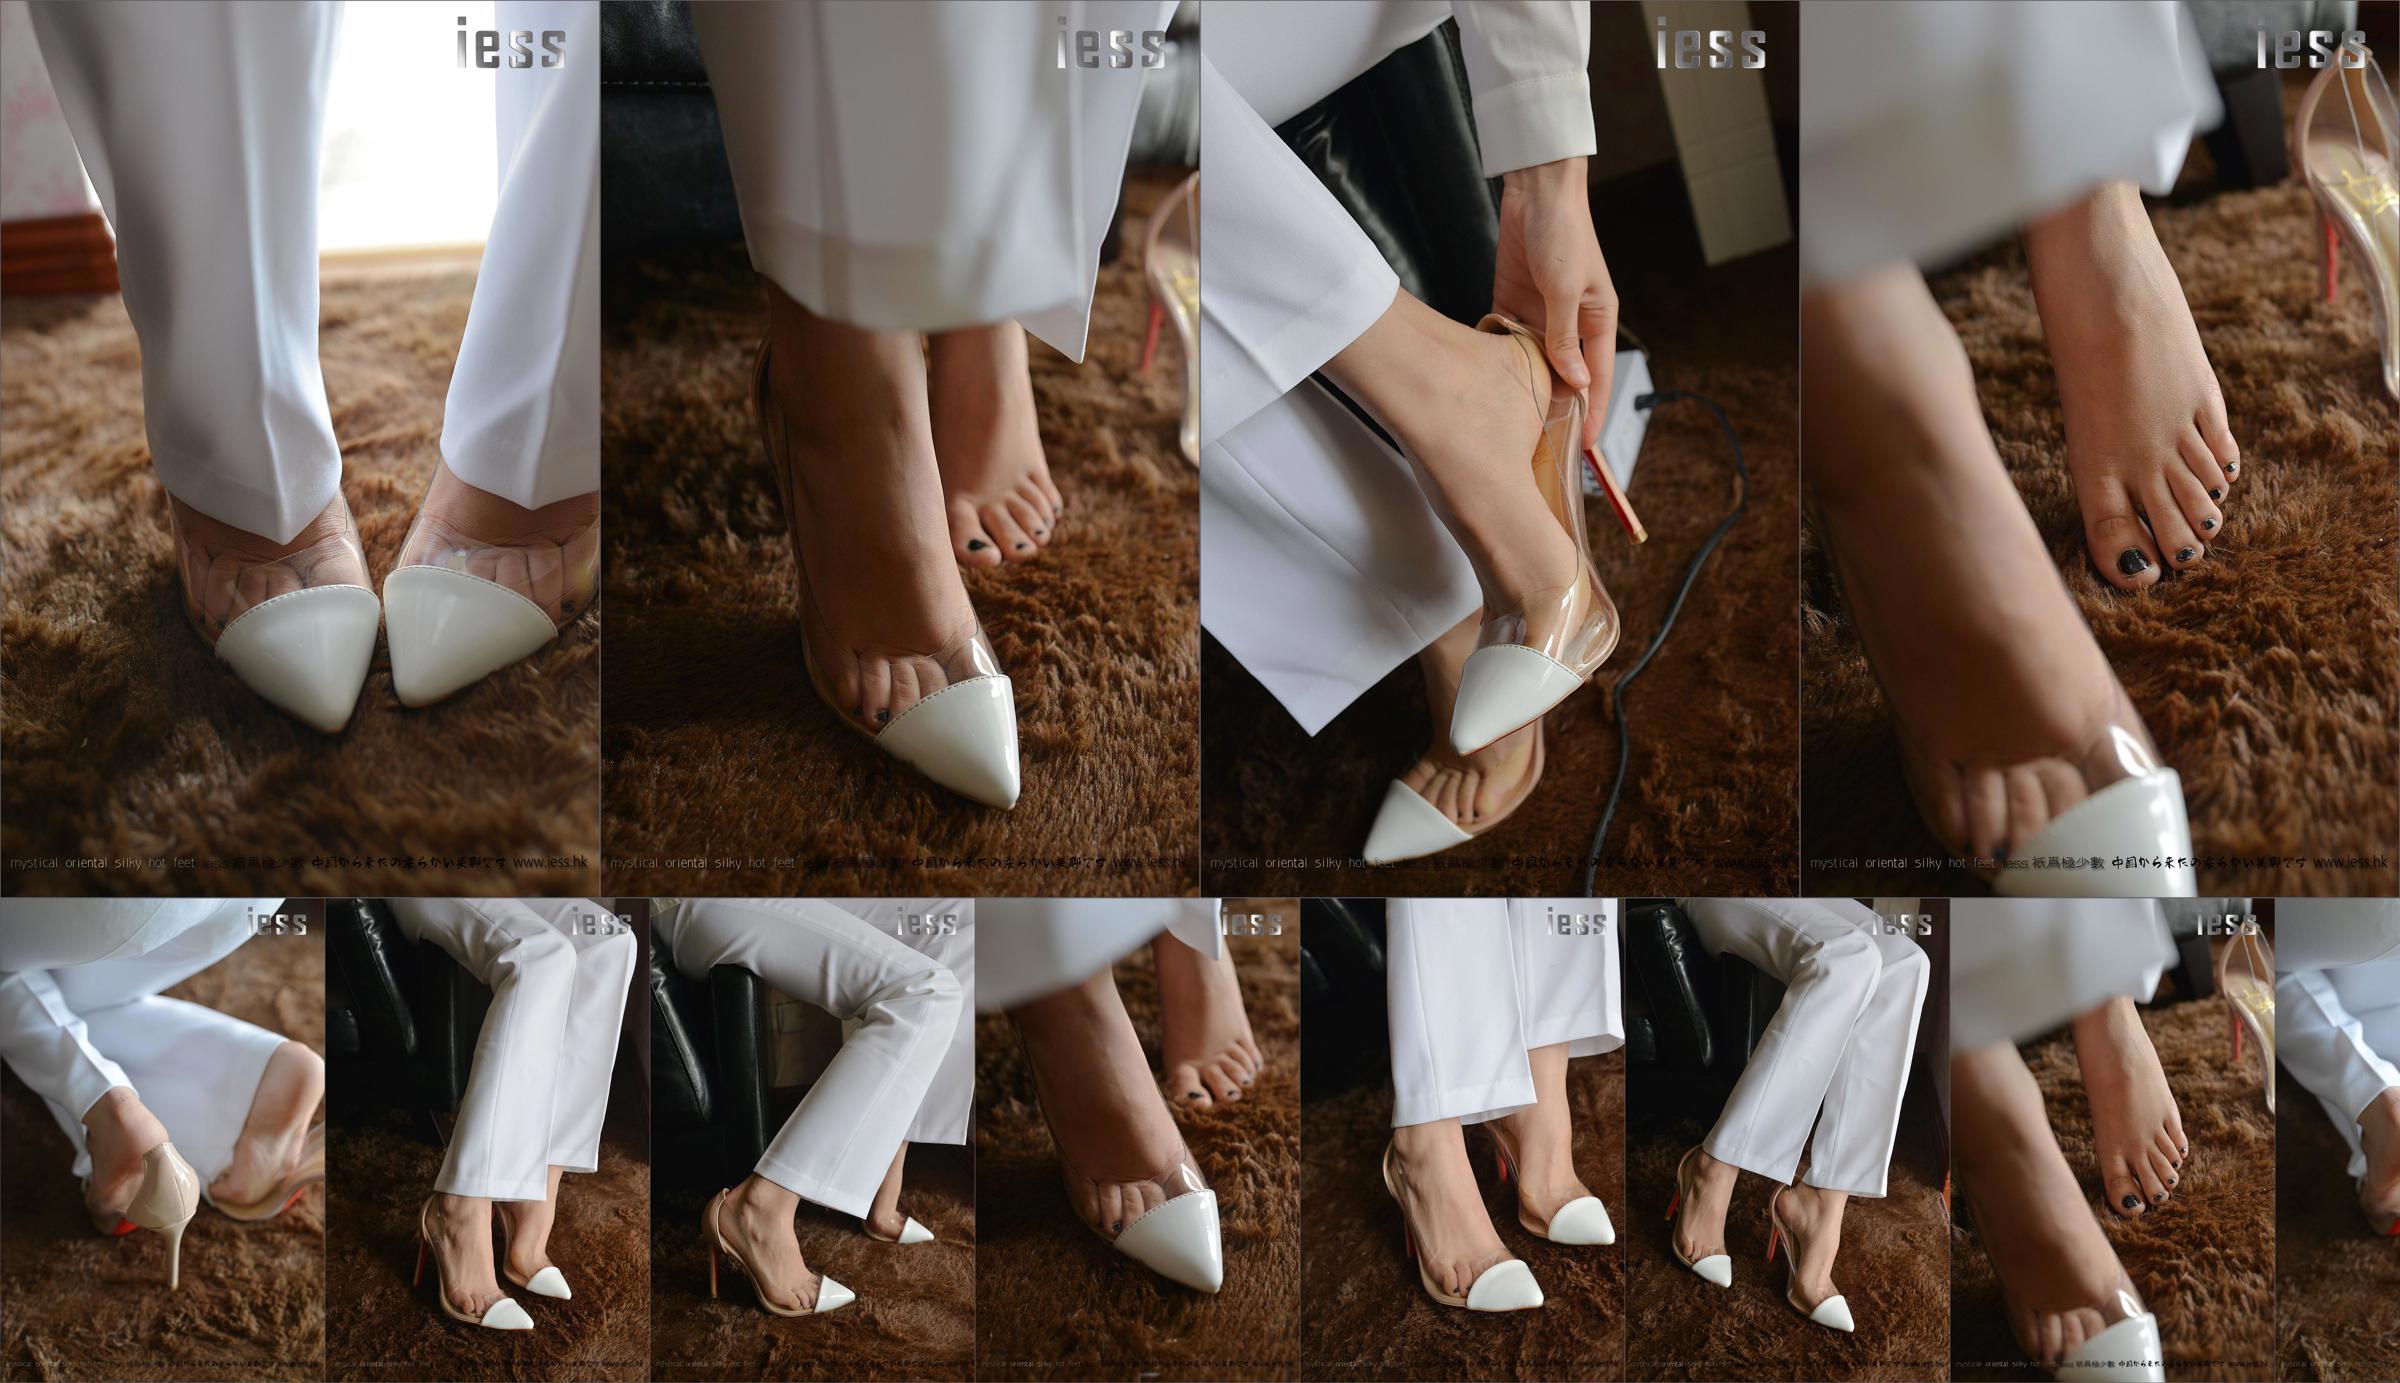 Silky Foot Bento 058 Hồi hộp "Bộ sưu tập-Giày cao gót chân trần" [IESS Wei Si Fun Xiang] No.ad3866 Trang 3